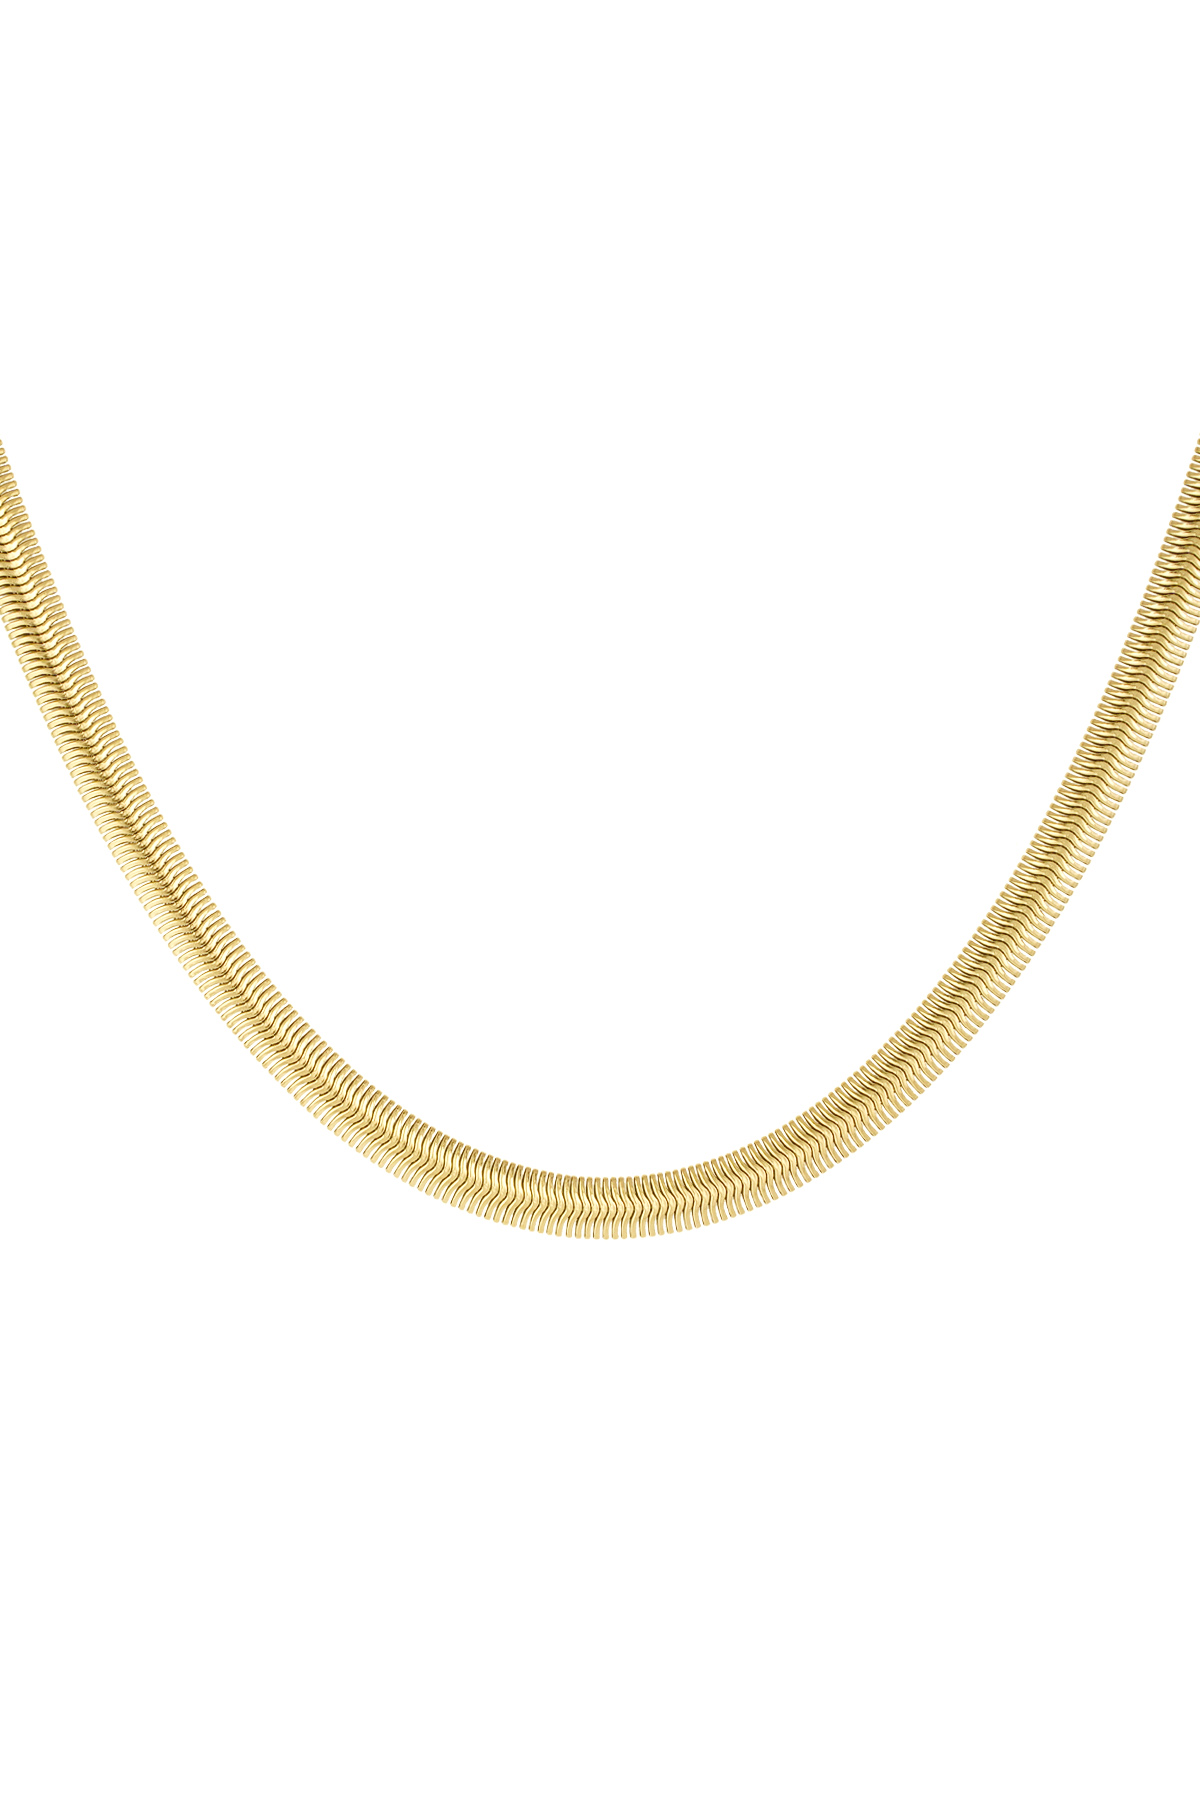 Halskette flach mit Aufdruck - gold-6.0MM